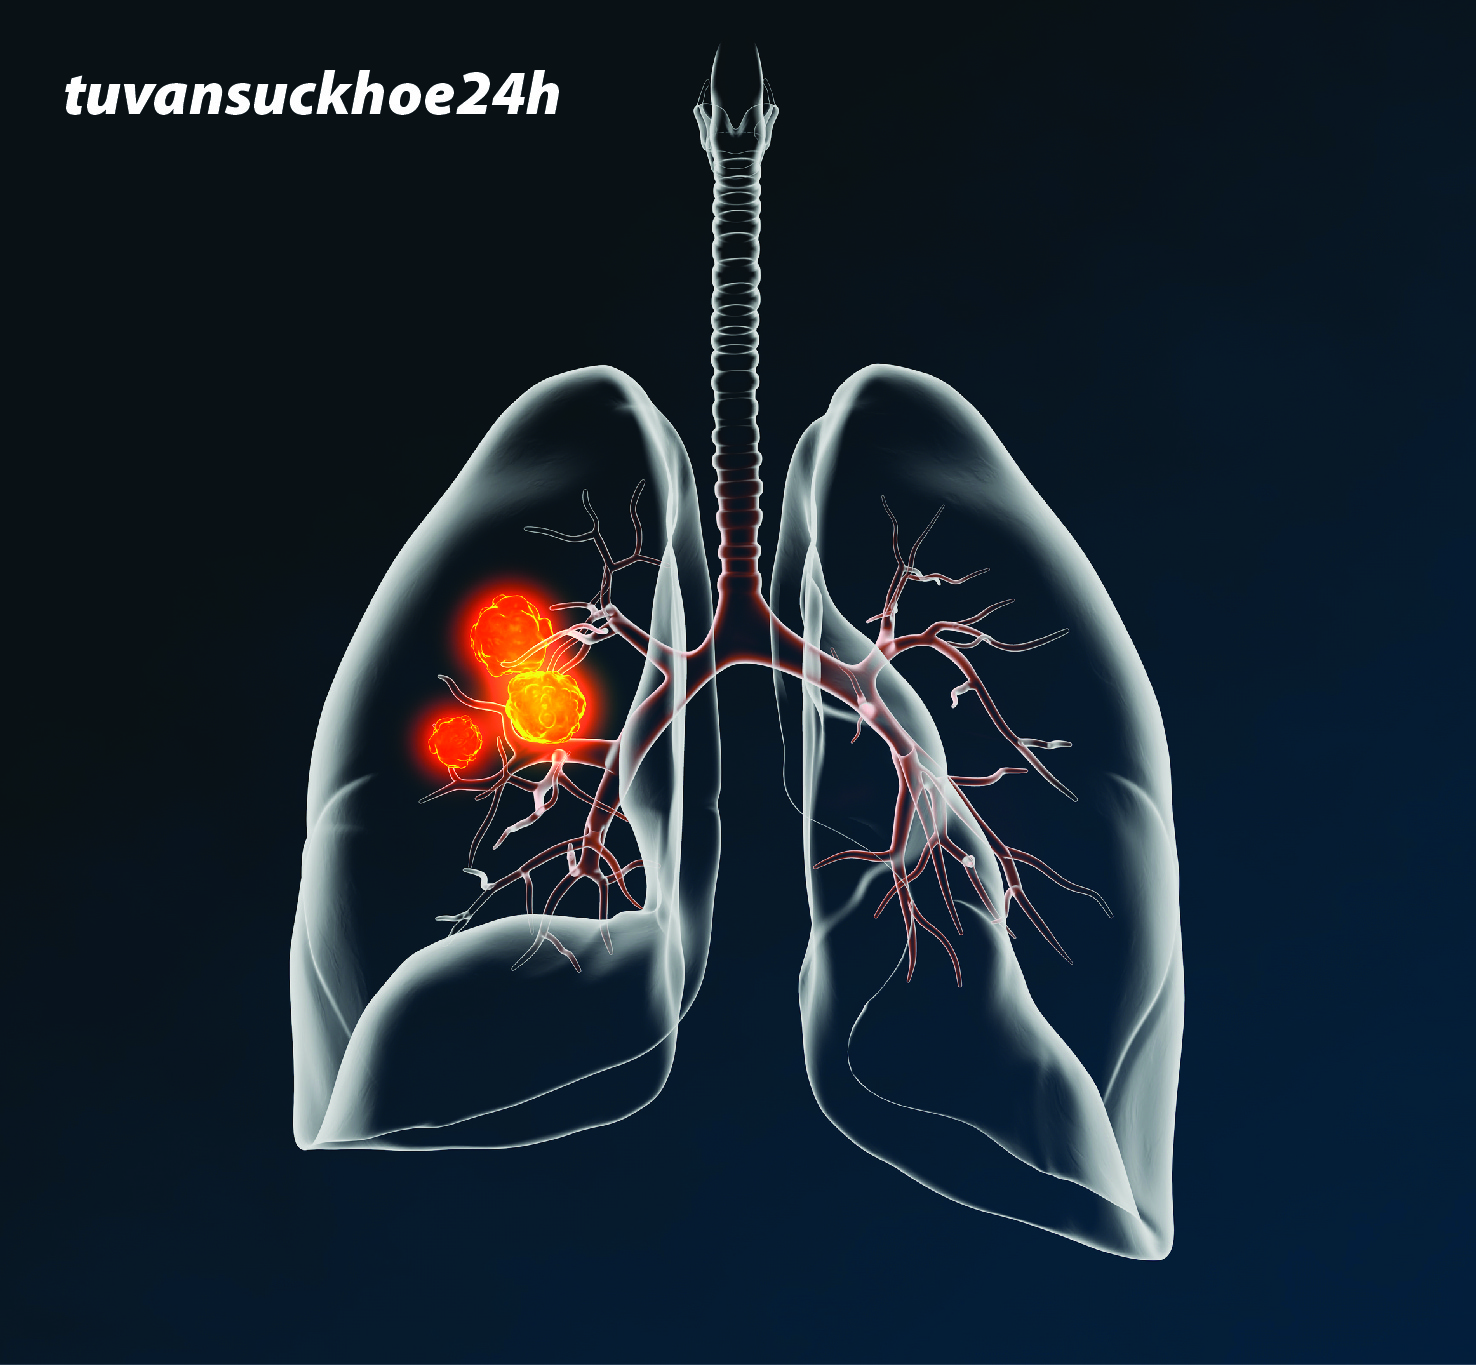 Ung thư phổi thứ phát là tình trạng nguy hiểm cần điều trị kịp thời